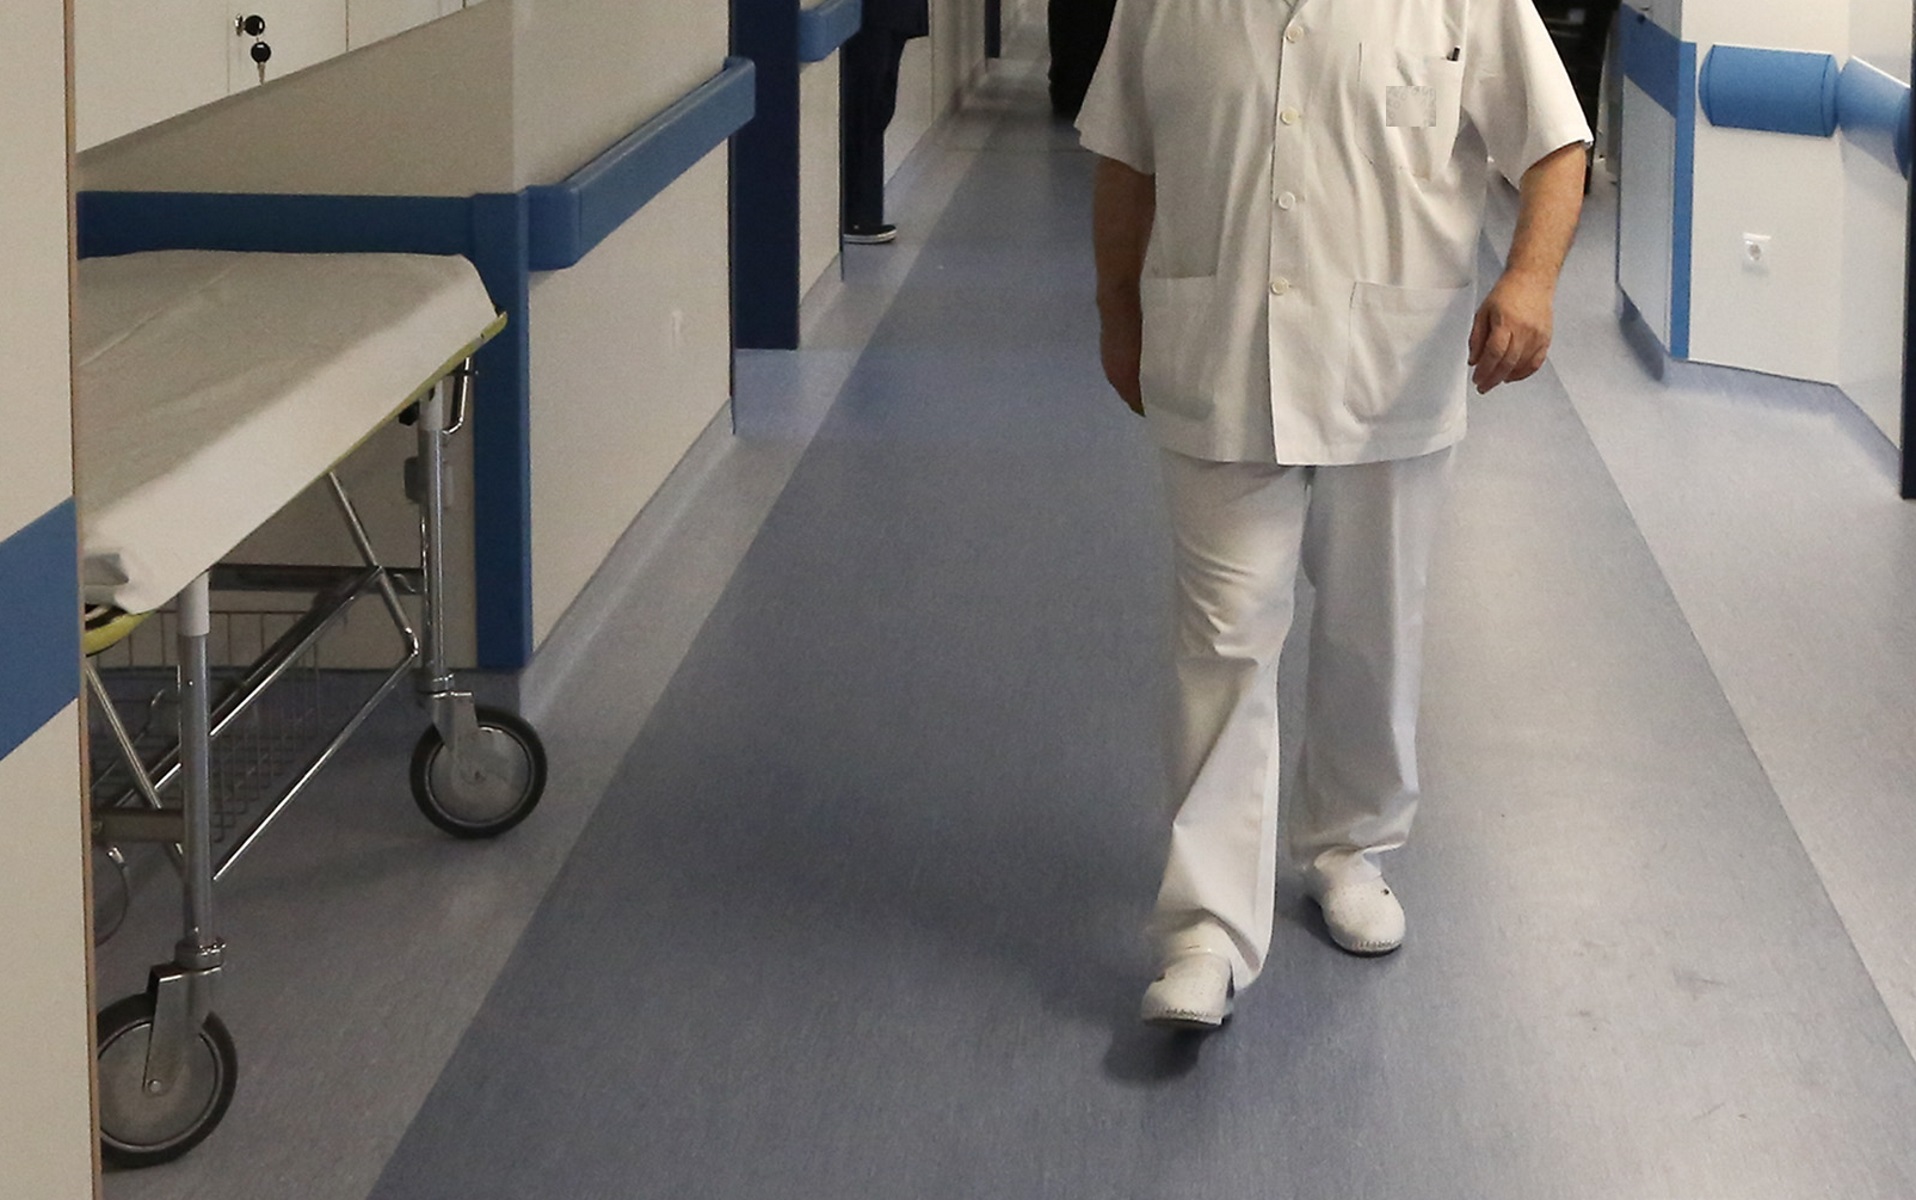 Σπάρτη: Με κορονοϊό 6 υγειονομικοί στο Νοσοκομείο – Κλείνουν ιατρεία, ακυρώνονται χειρουργεία